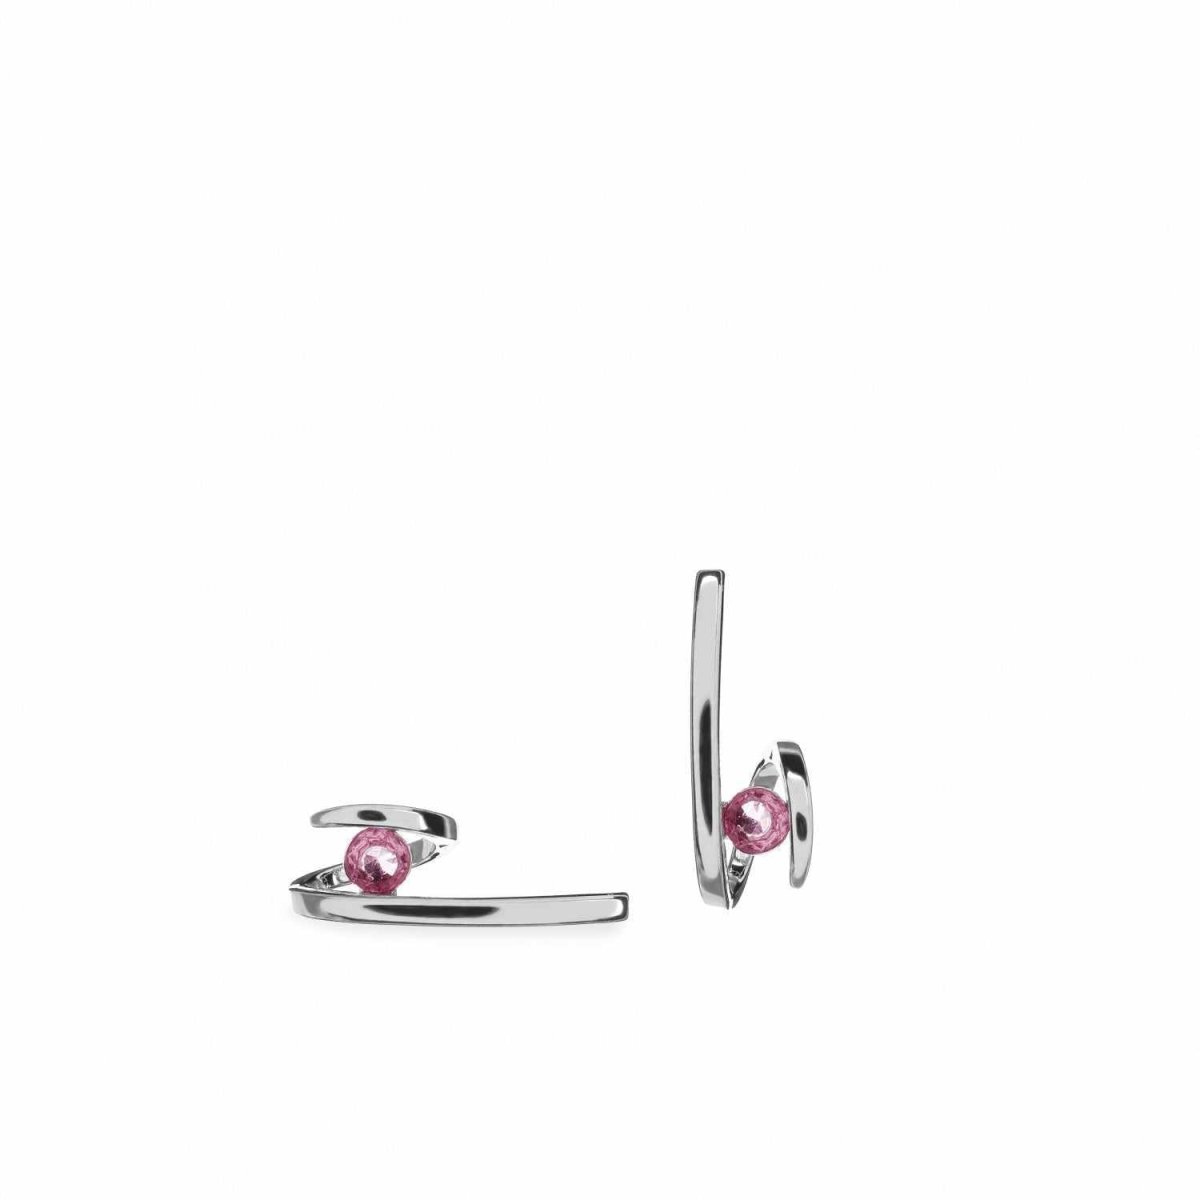 Earrings - Original earrings with pink gemstone zigzag design